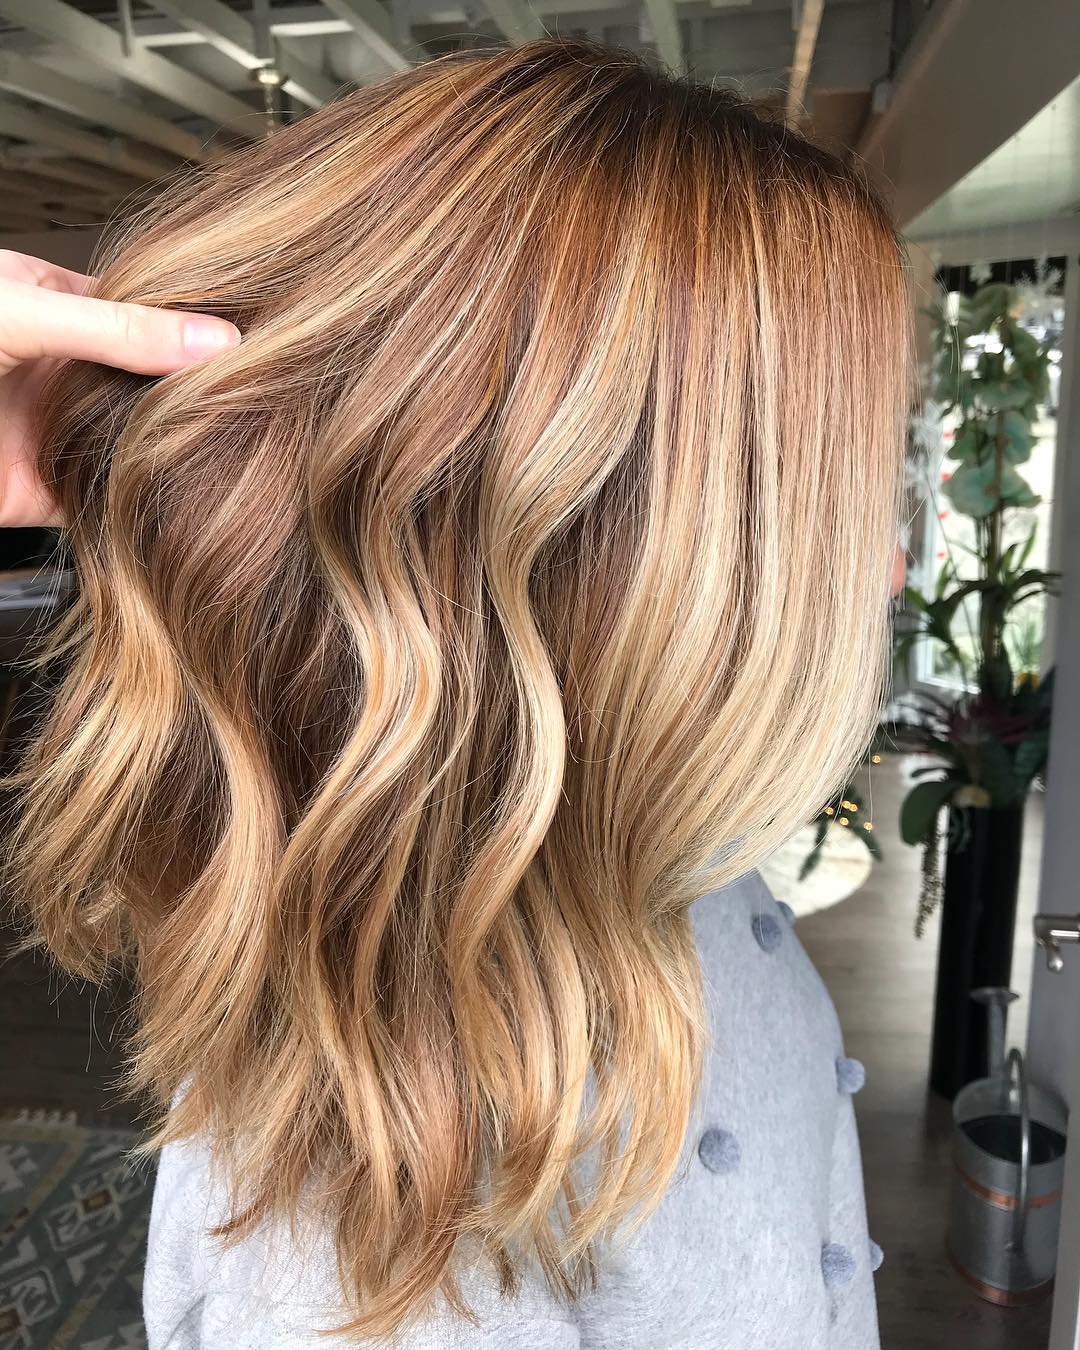 Модный цвет волос сочетание каштановых и золотистых прядей